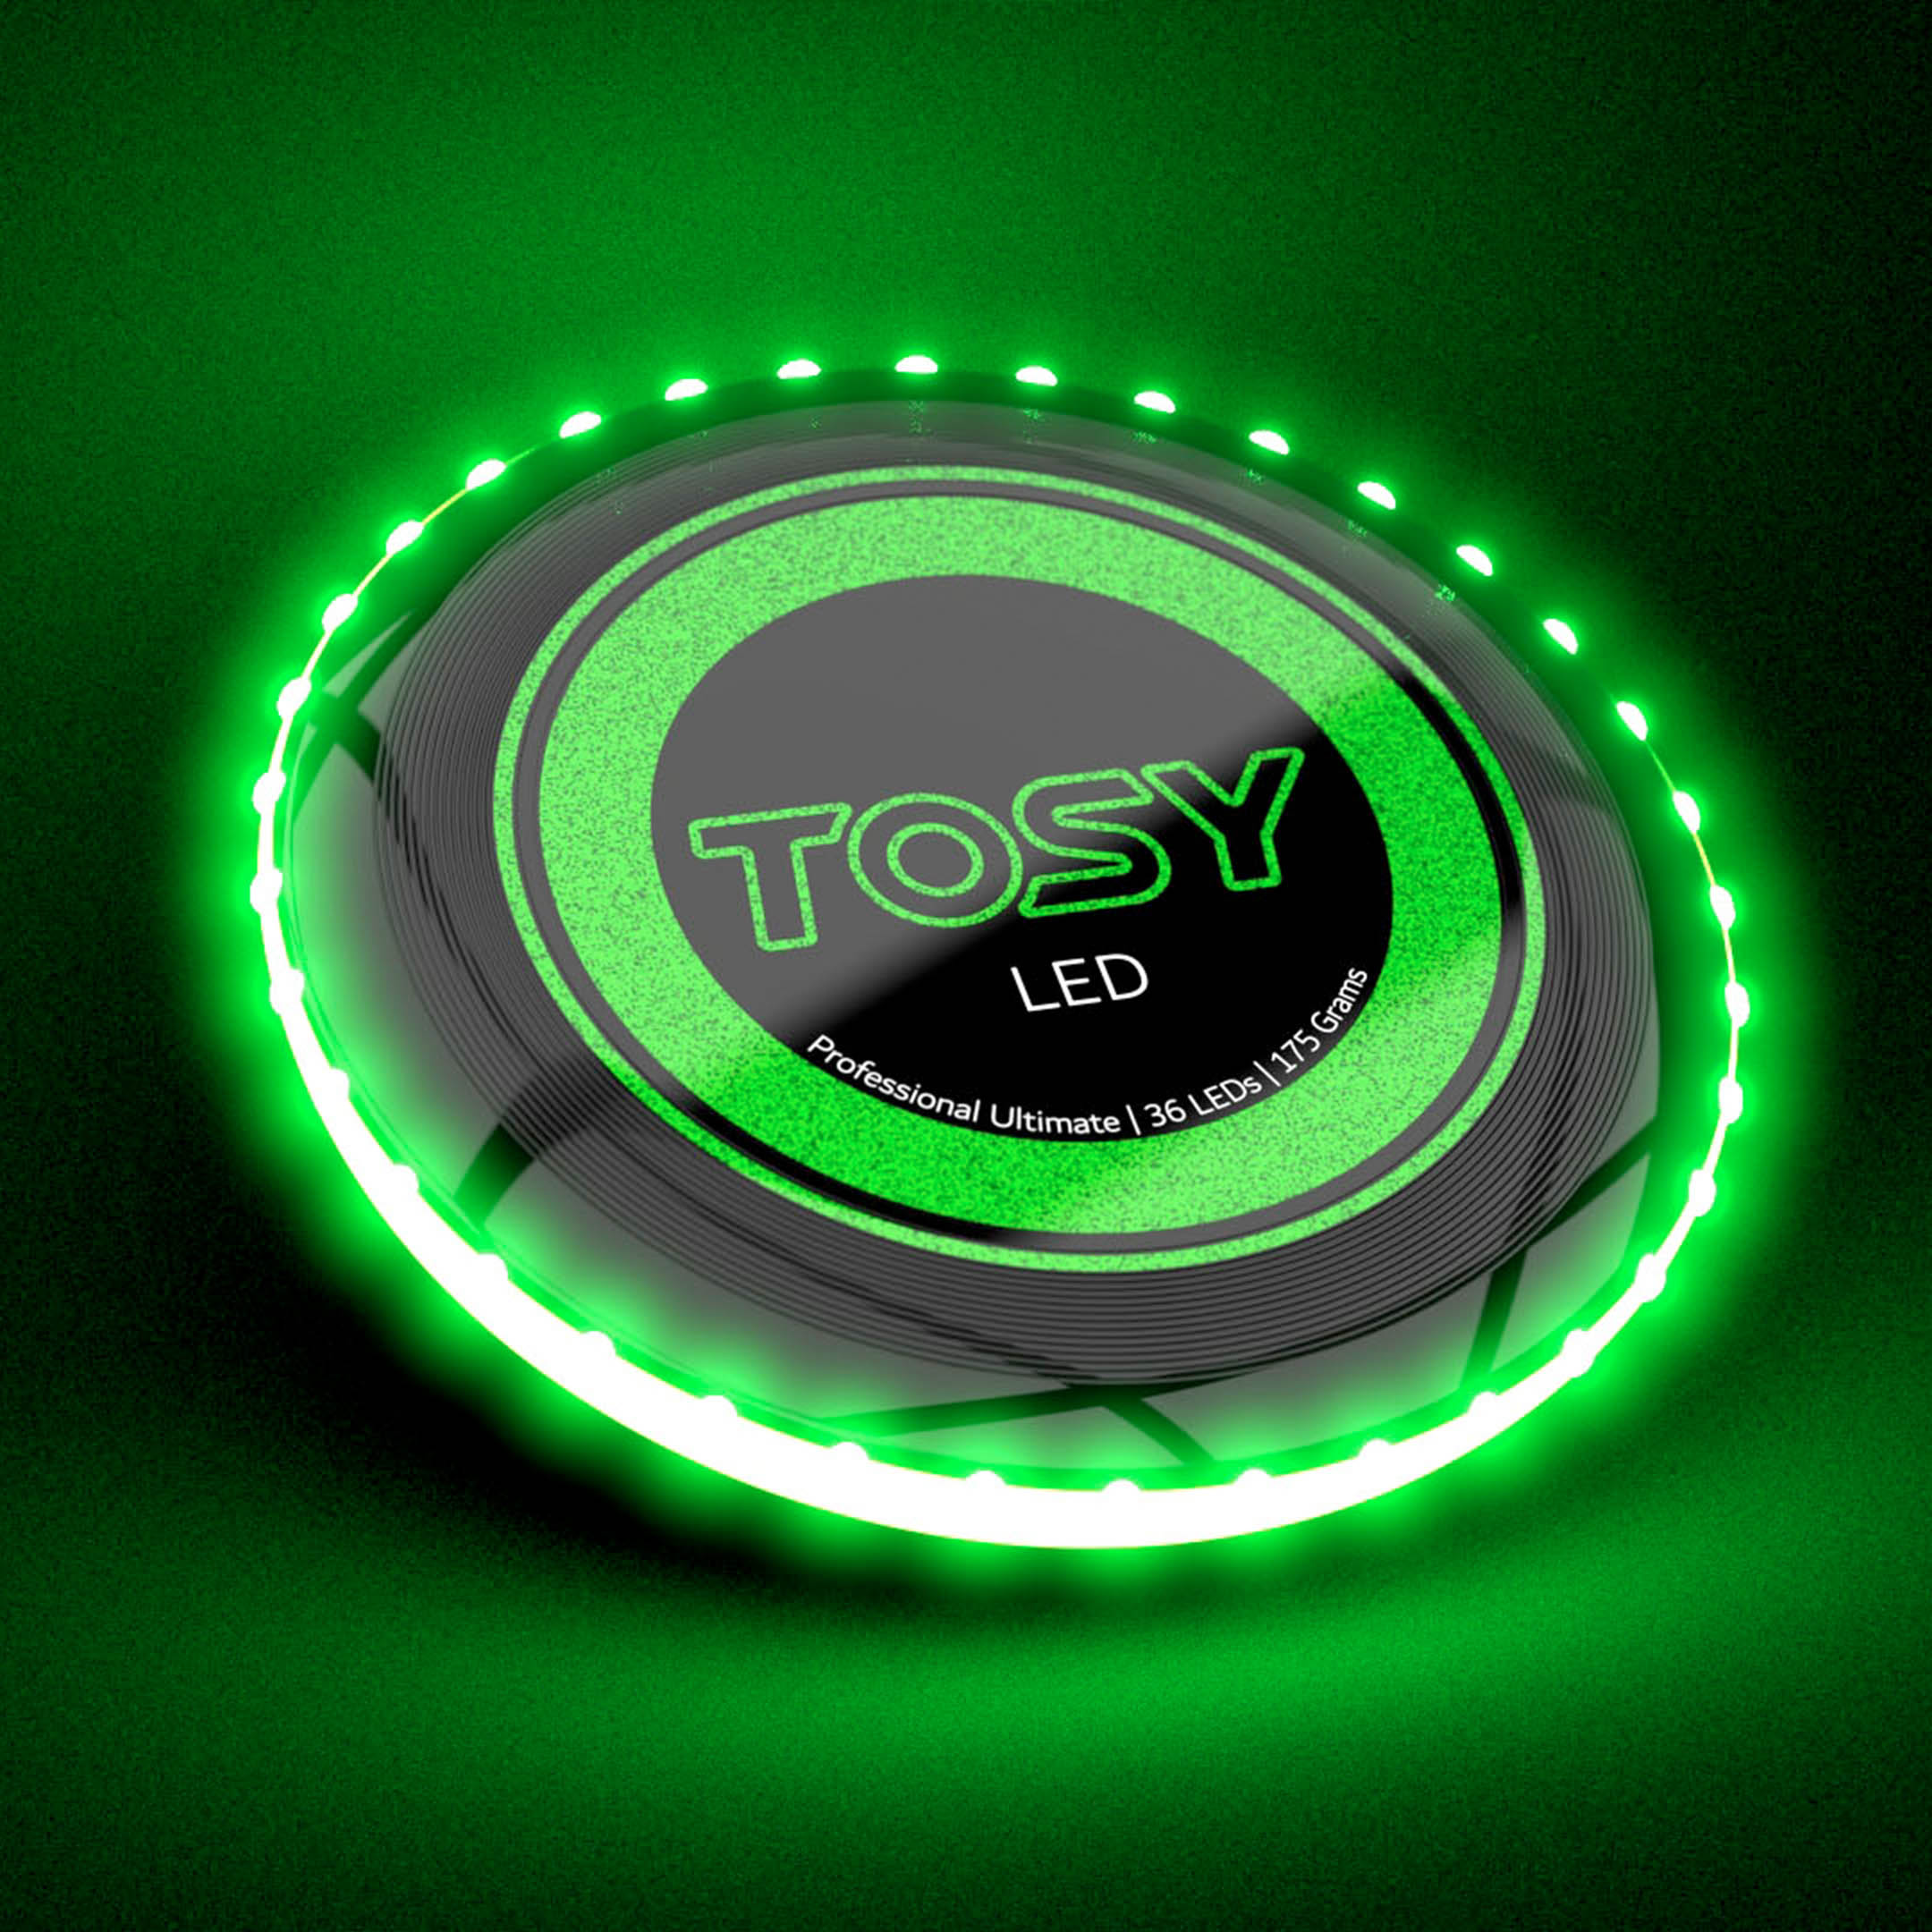 Đĩa ném Frisbee TOSY Ultimate Disc Siêu sáng 360 và 36 LEDs/ Tuỳ chỉnh thông minh/ Cảm biến chuyển động/ Pin sạc/ Chống nước/ 175gr